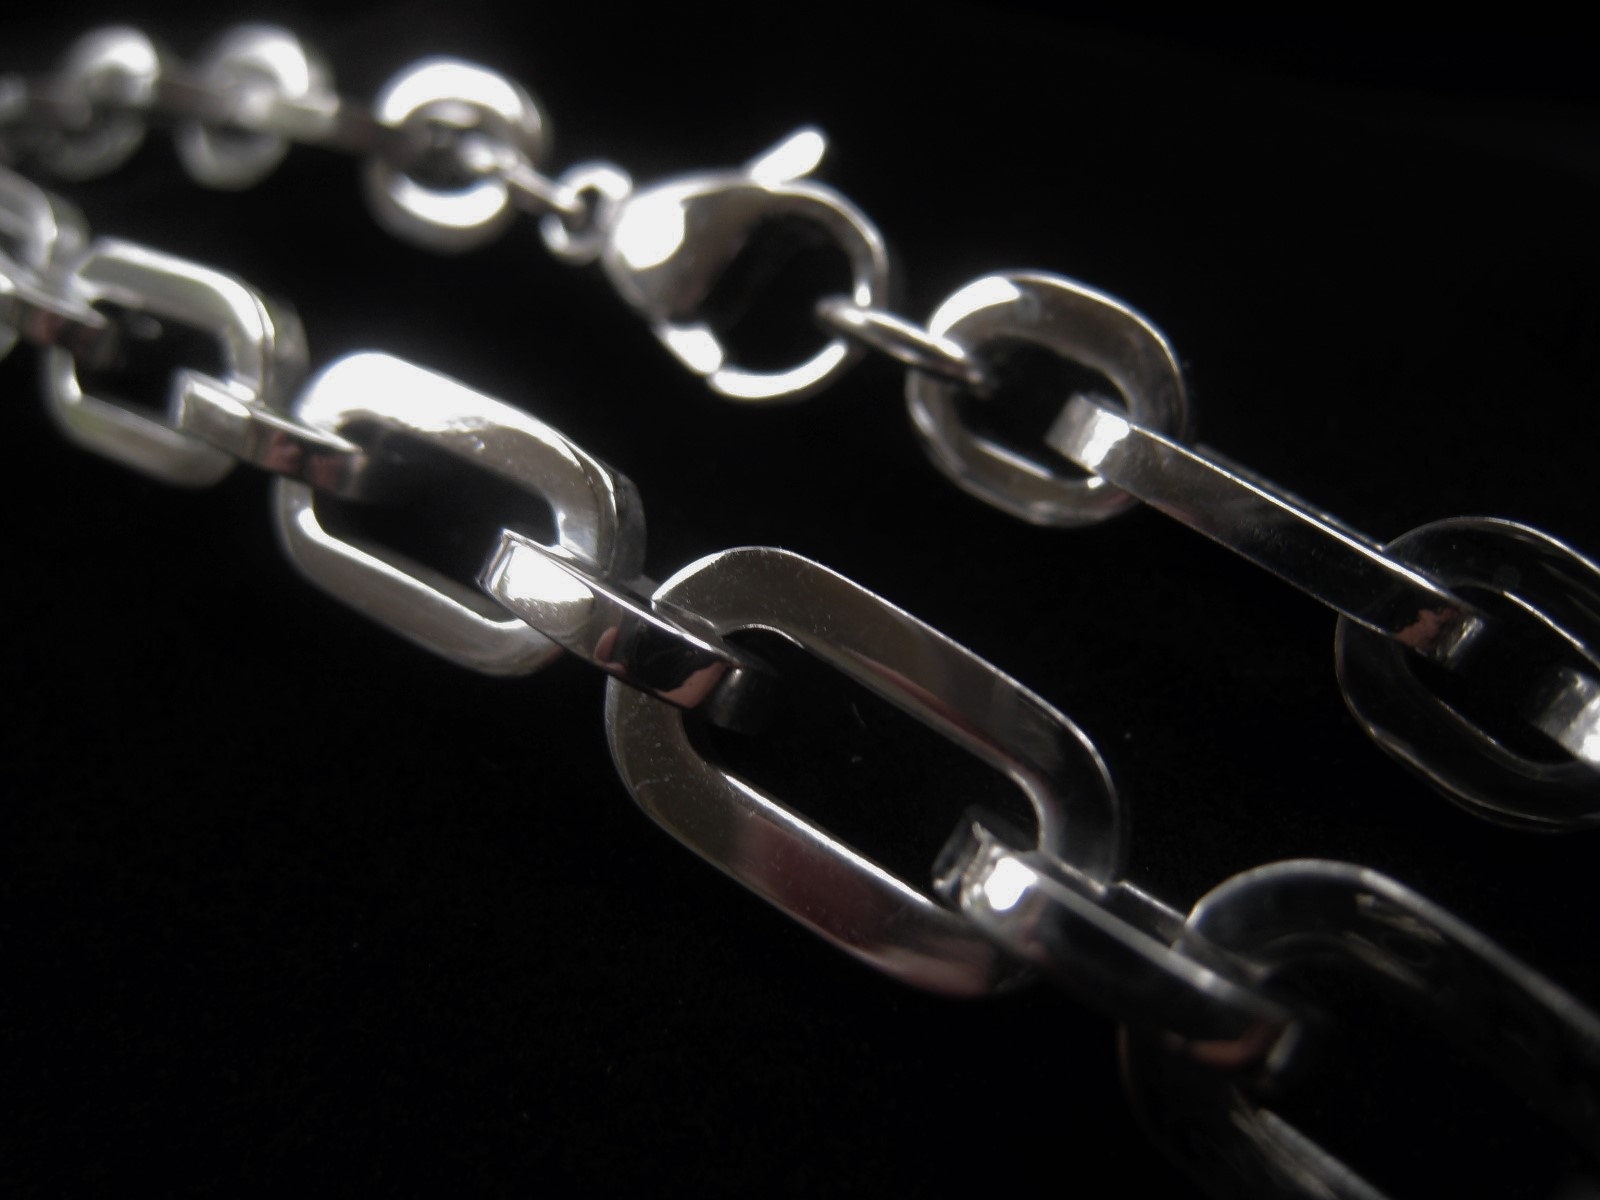 Titanium Men's 5mm Oval Link Necklace Chain Sz 34